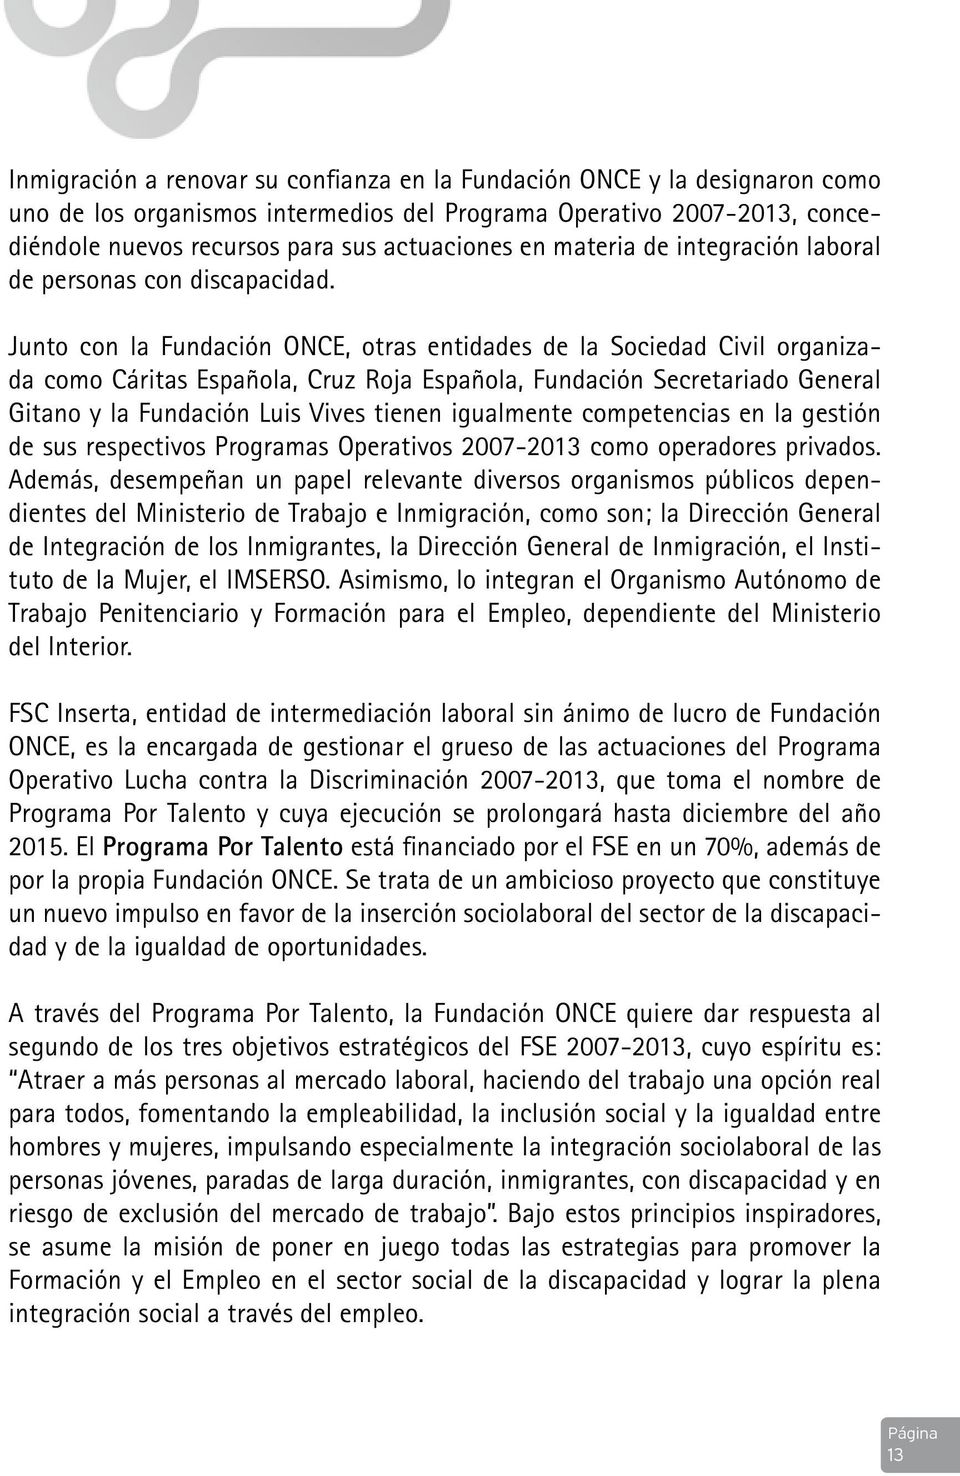 Junto con la Fundación ONCE, otras entidades de la Sociedad Civil organizada como Cáritas Española, Cruz Roja Española, Fundación Secretariado General Gitano y la Fundación Luis Vives tienen